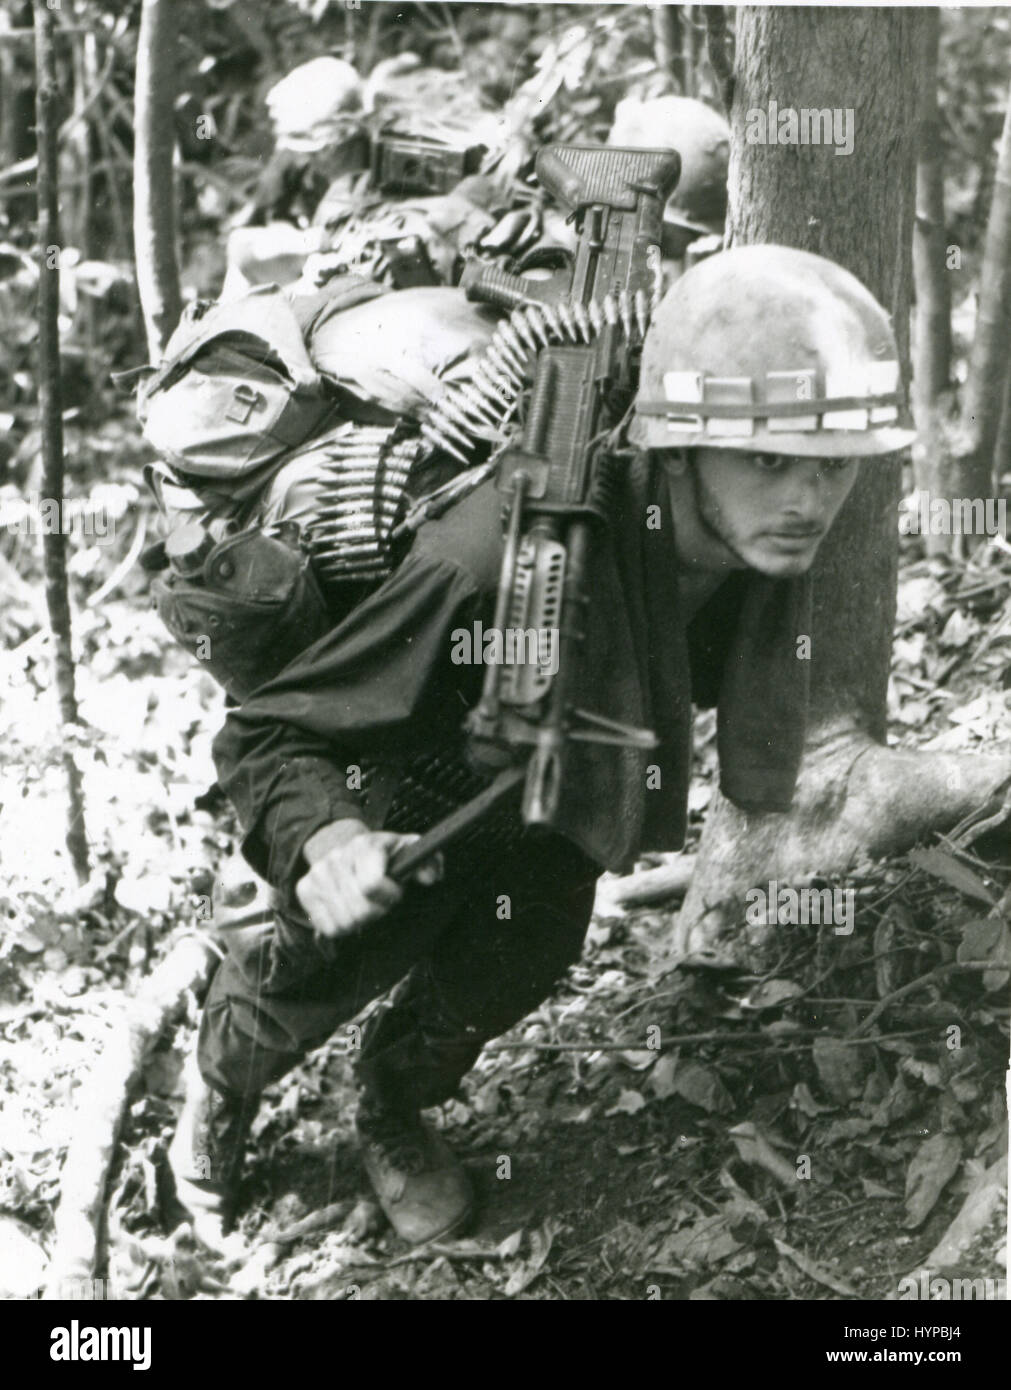 Ein 8. inf Div-MG-Schütze macht seinen Weg einen steilen Hang hinauf, während eines Suchvorgangs and destroy-Mission. Das Maschinengewehr ist ein m-60. 15. Mai 1969. Stockfoto